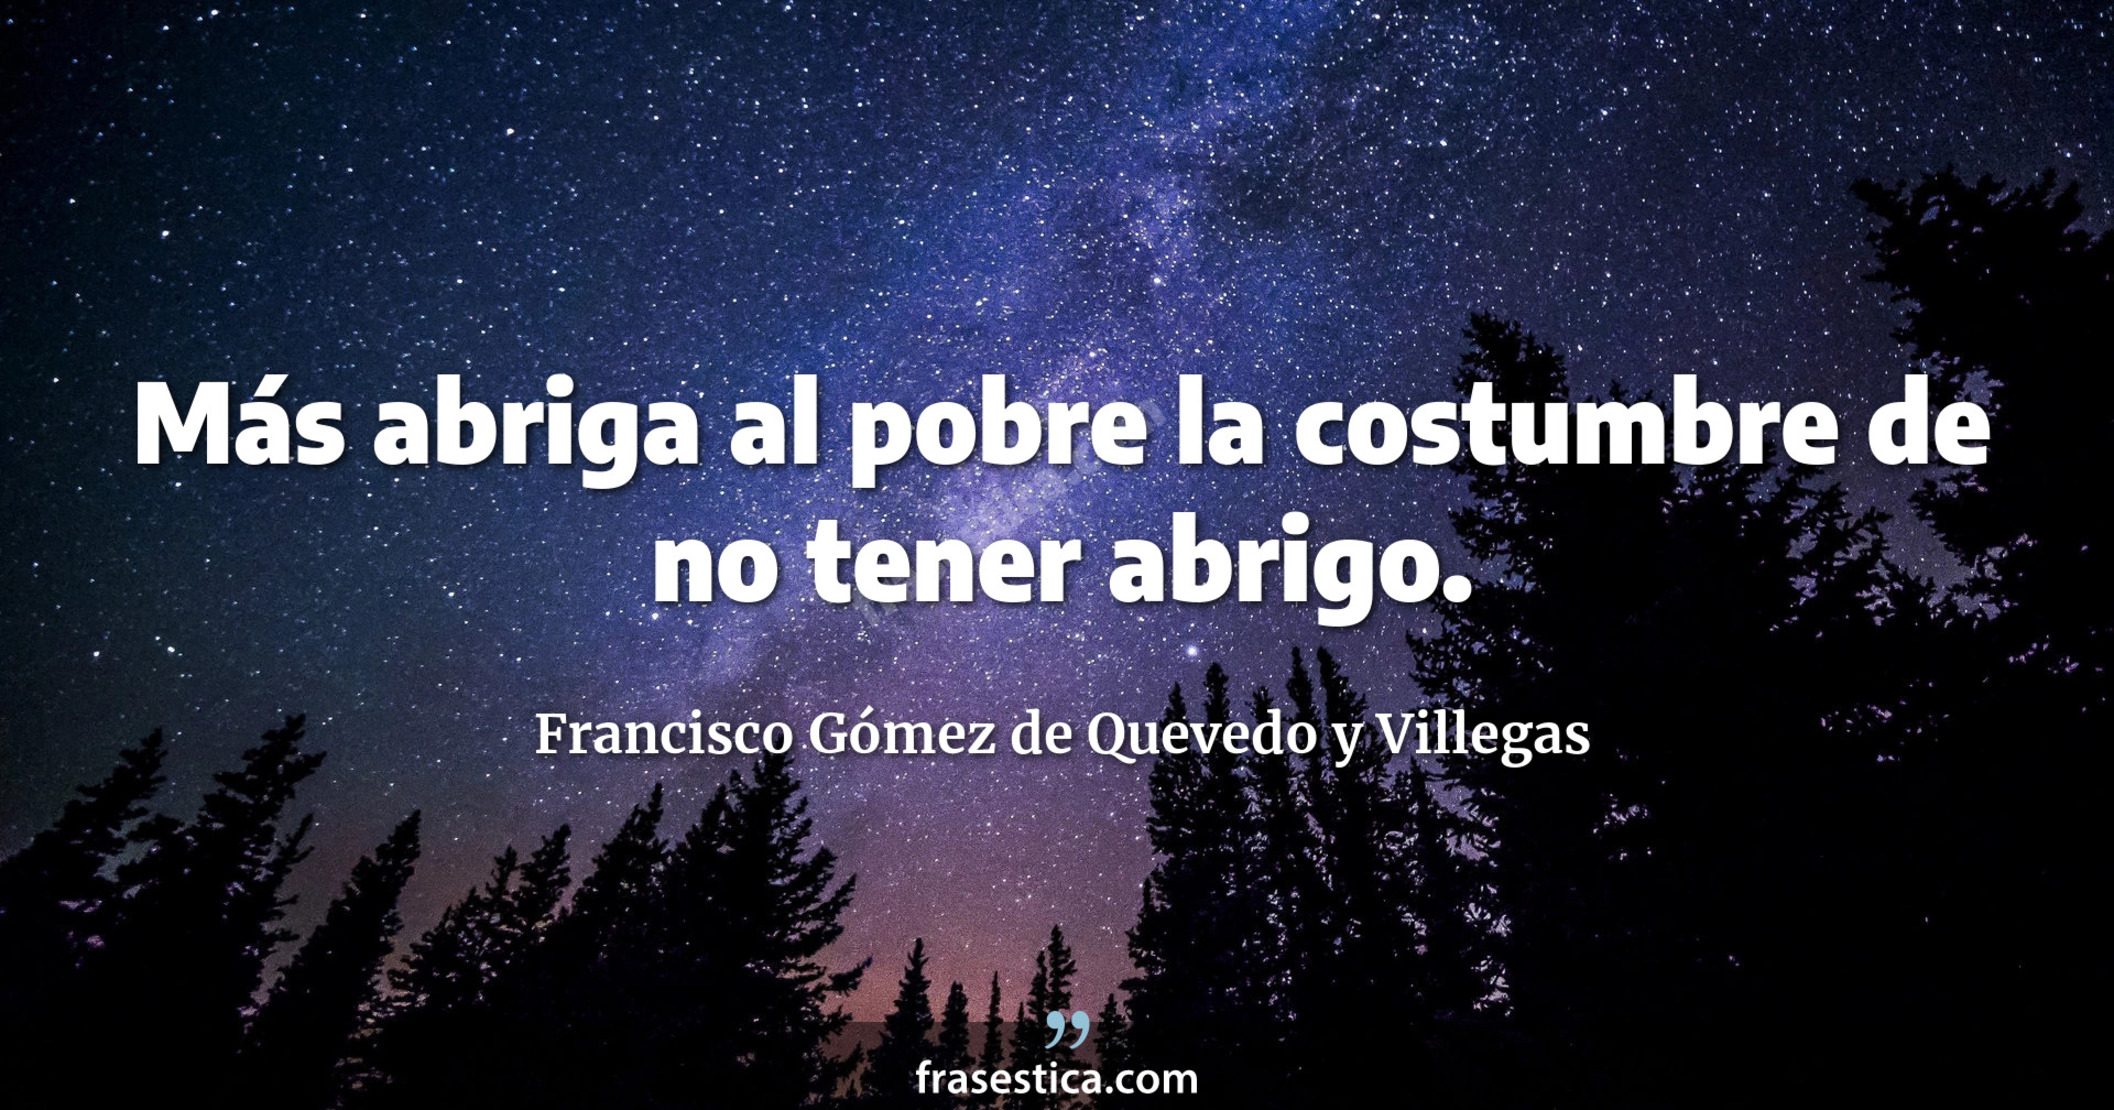 Más abriga al pobre la costumbre de no tener abrigo. - Francisco Gómez de Quevedo y Villegas